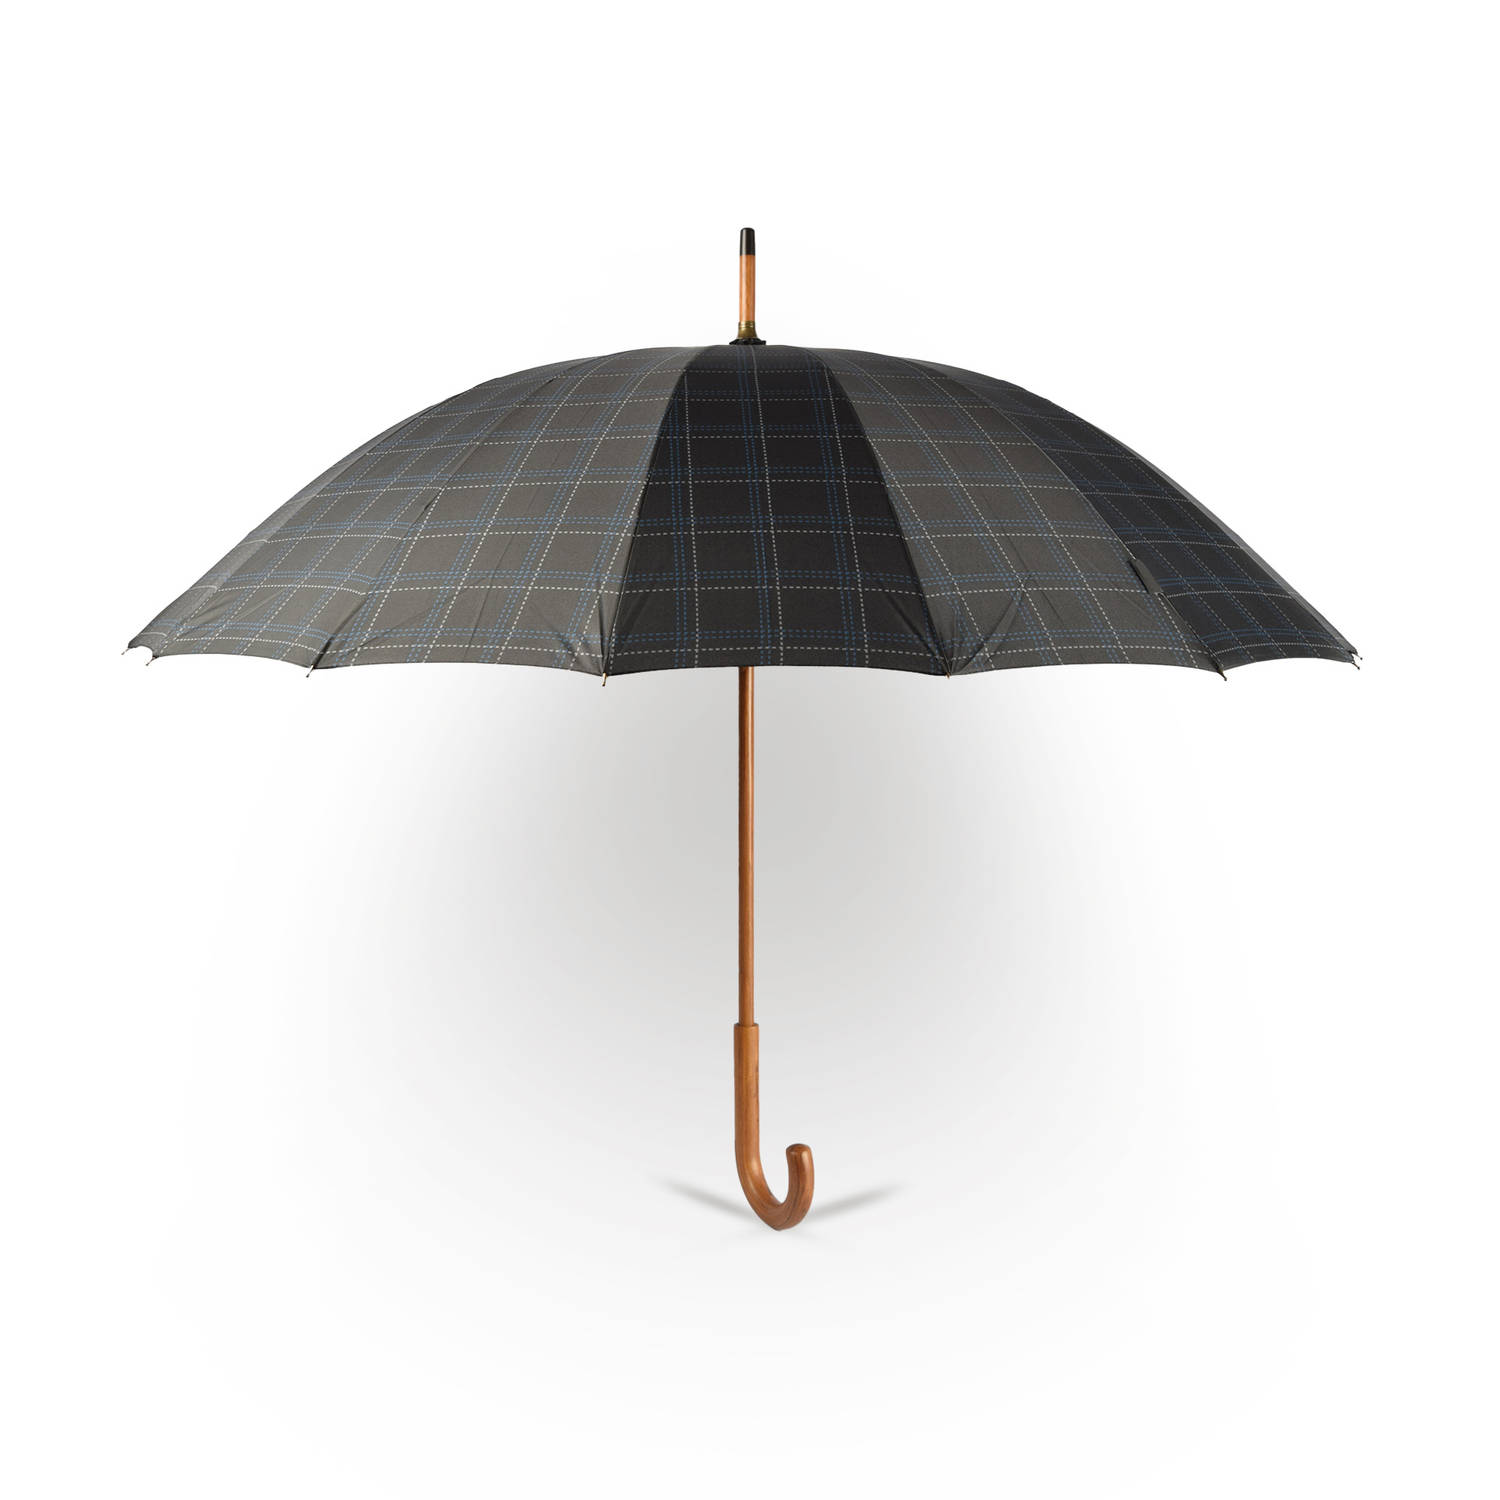 Grote Grijs Paraplu met Houten Handgreep - Automatisch Windproof - Ø102cm - Geïnspireerd door Prince of Wales Check - Polyester Pongee & Fiberglass